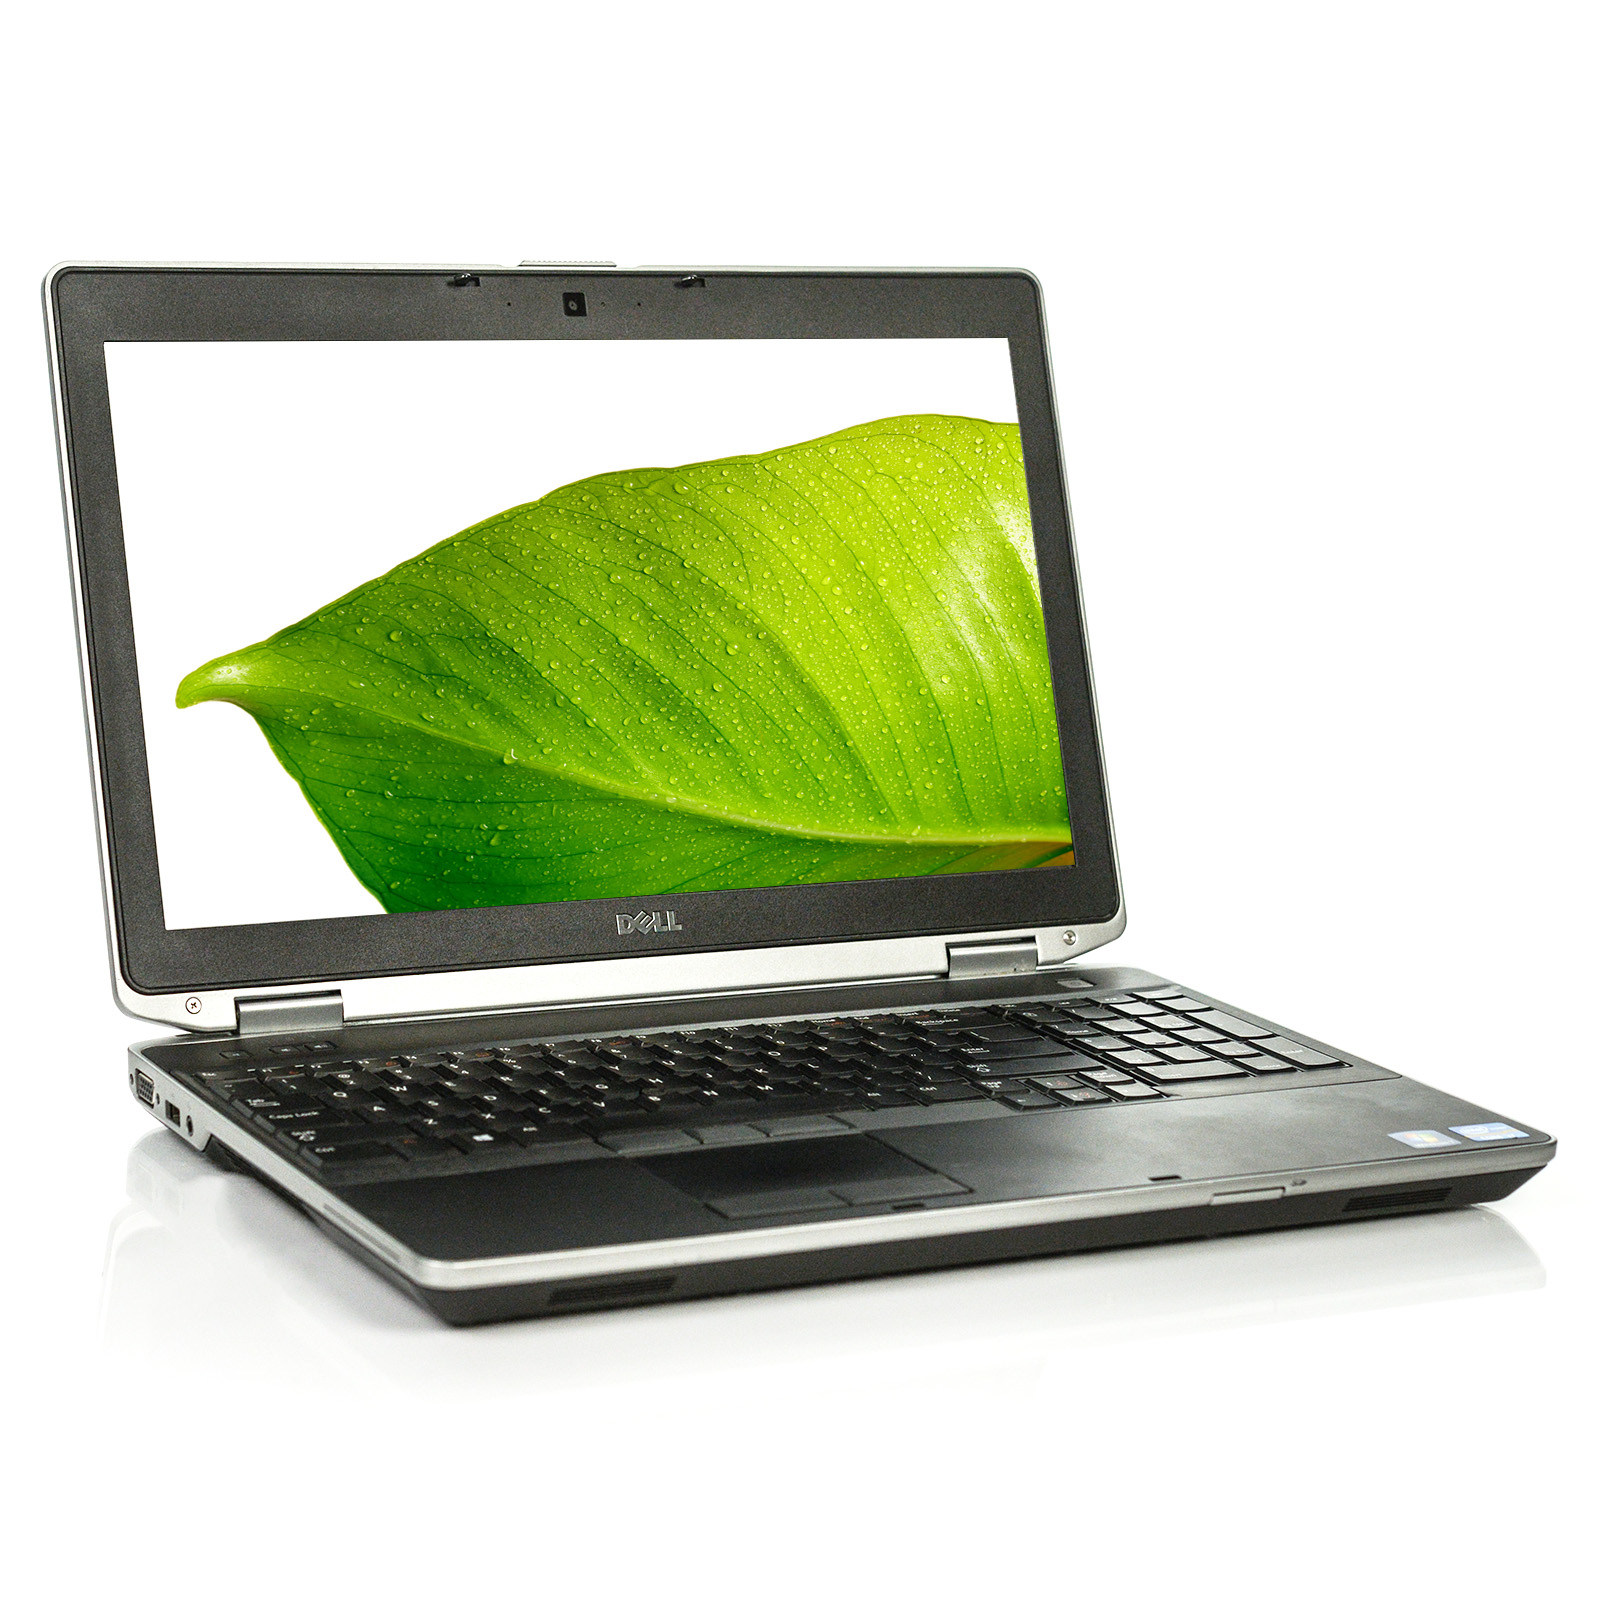 Used Dell Latitude E6530 Laptop i7 Quad-Core 4GB 500GB Win 10 Pro A v.WCB - image 1 of 8